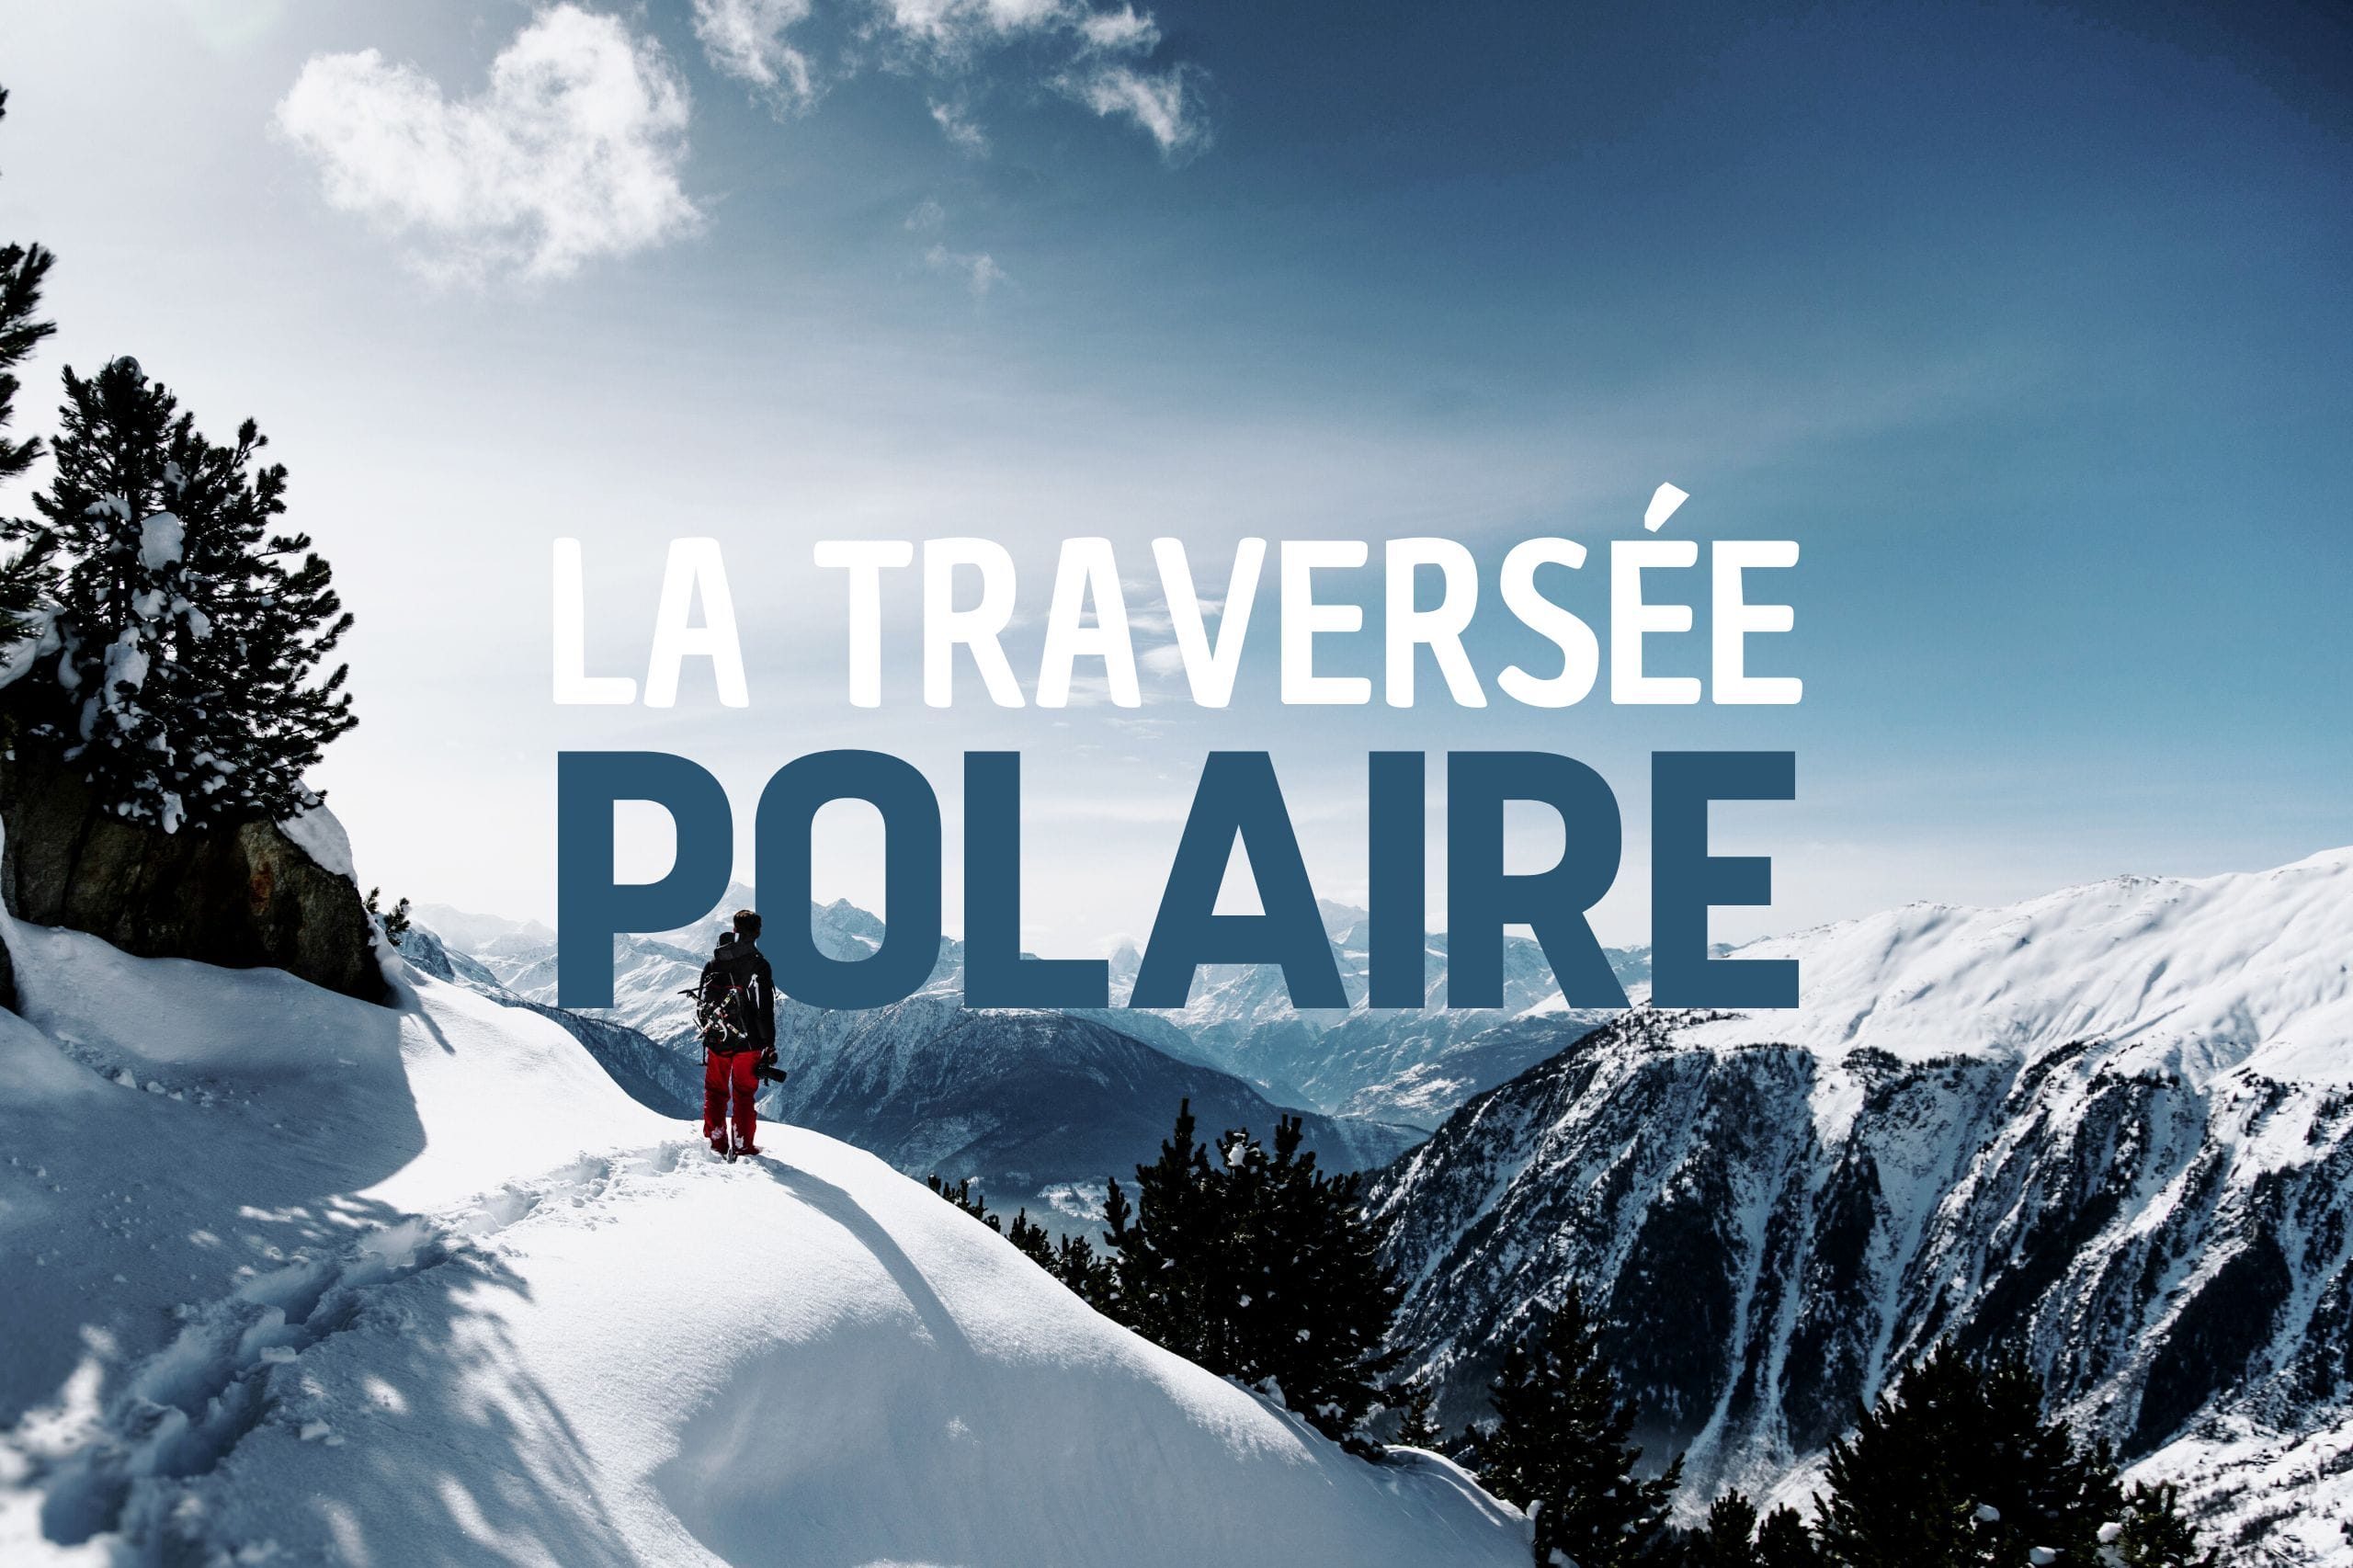 LA TRAVERSEE POLAIRE  : Tour du Queyras : 6 jours de trek hivernal en raquettes et refuges